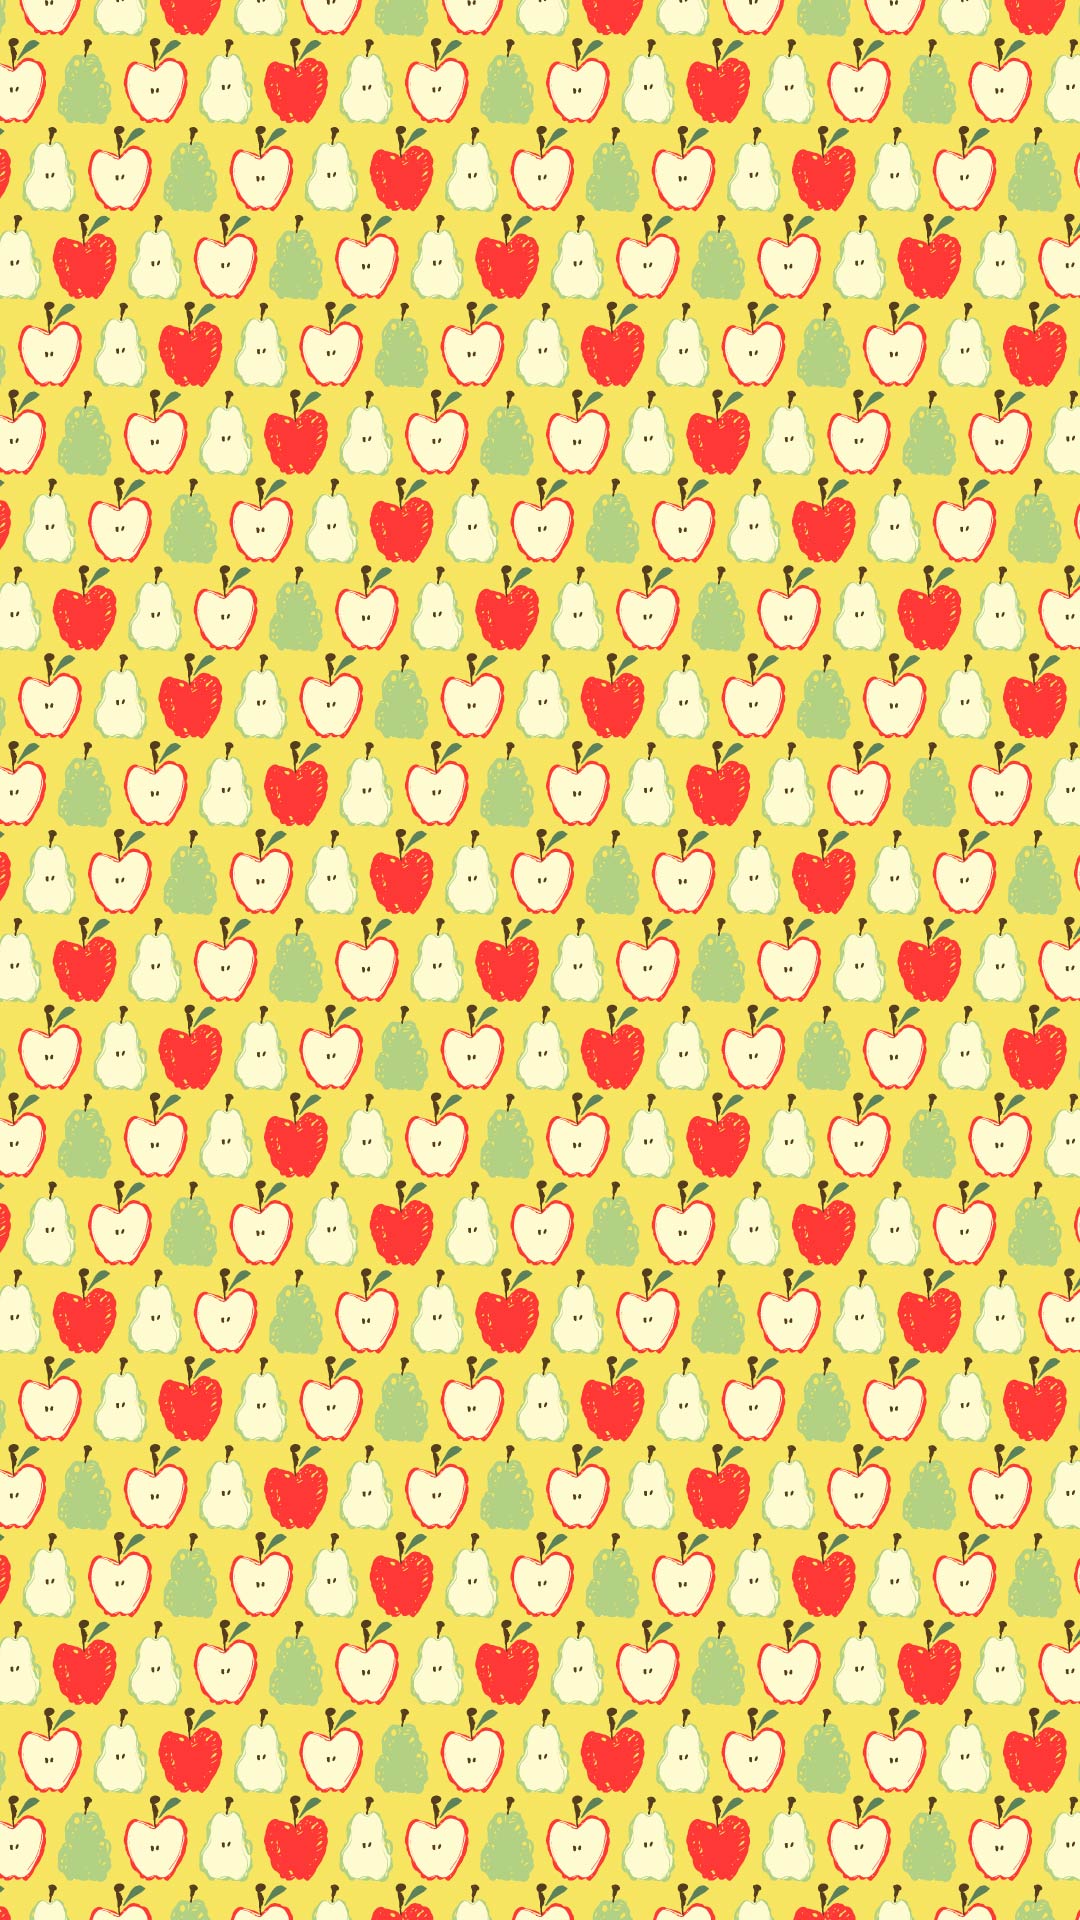 黄色の背景にりんごと洋梨のパターン